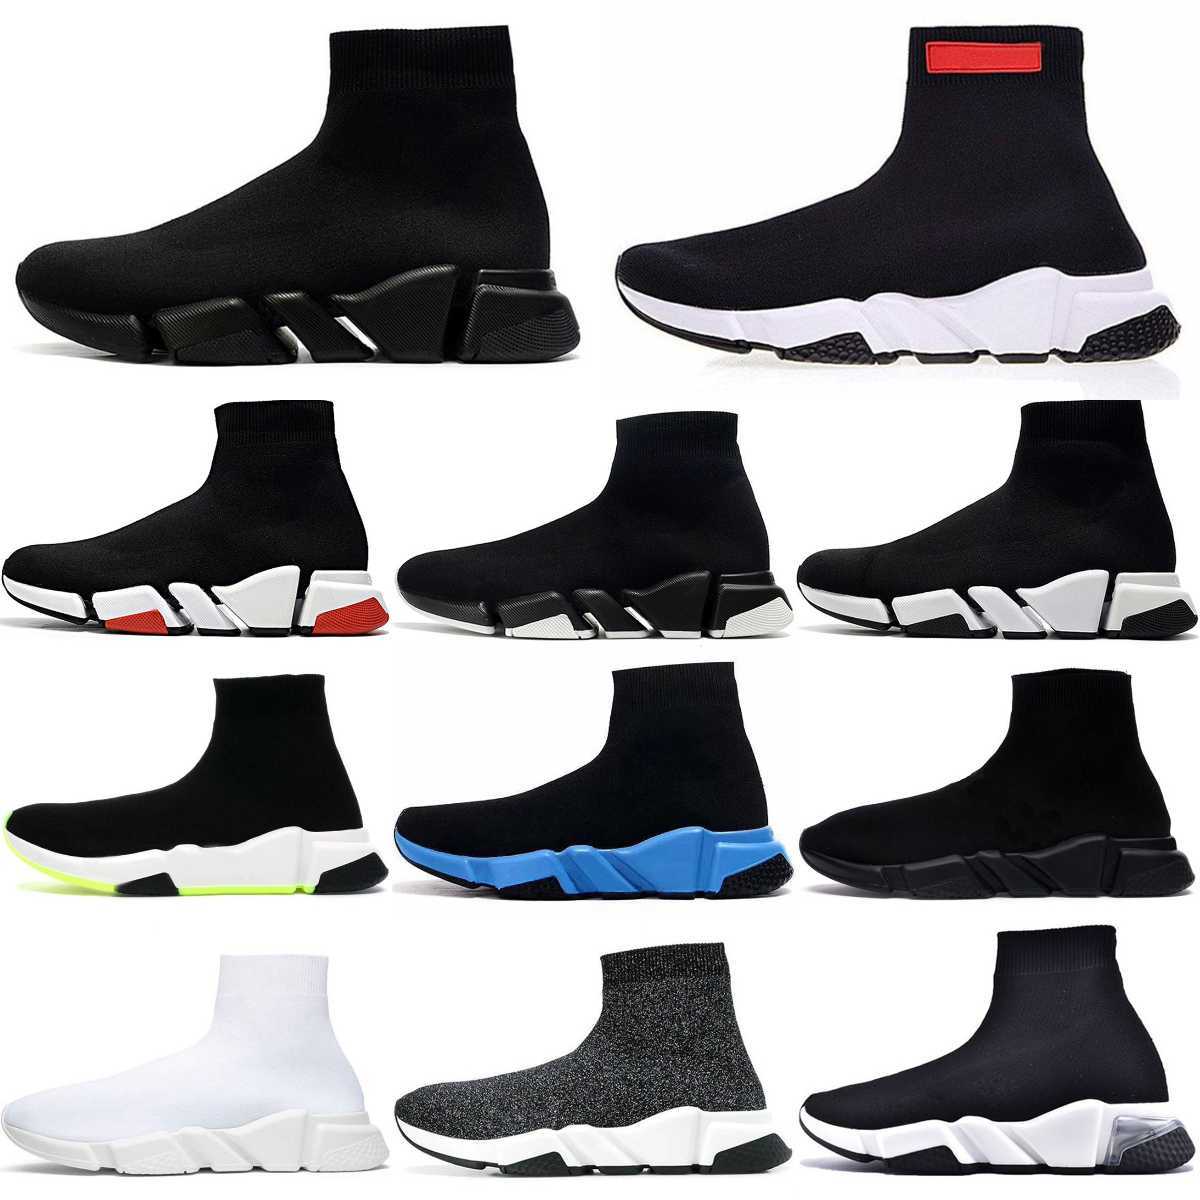 Tasarımcılar hızlar 2.0 v2 lüks gündelik ayakkabı platformu spor ayakkabı erkekleri kadınlar tripler s paris çorap botları siyah beyaz mavi ışık şeridi yakut grafiti eğitmenler spor ayakkabı s8